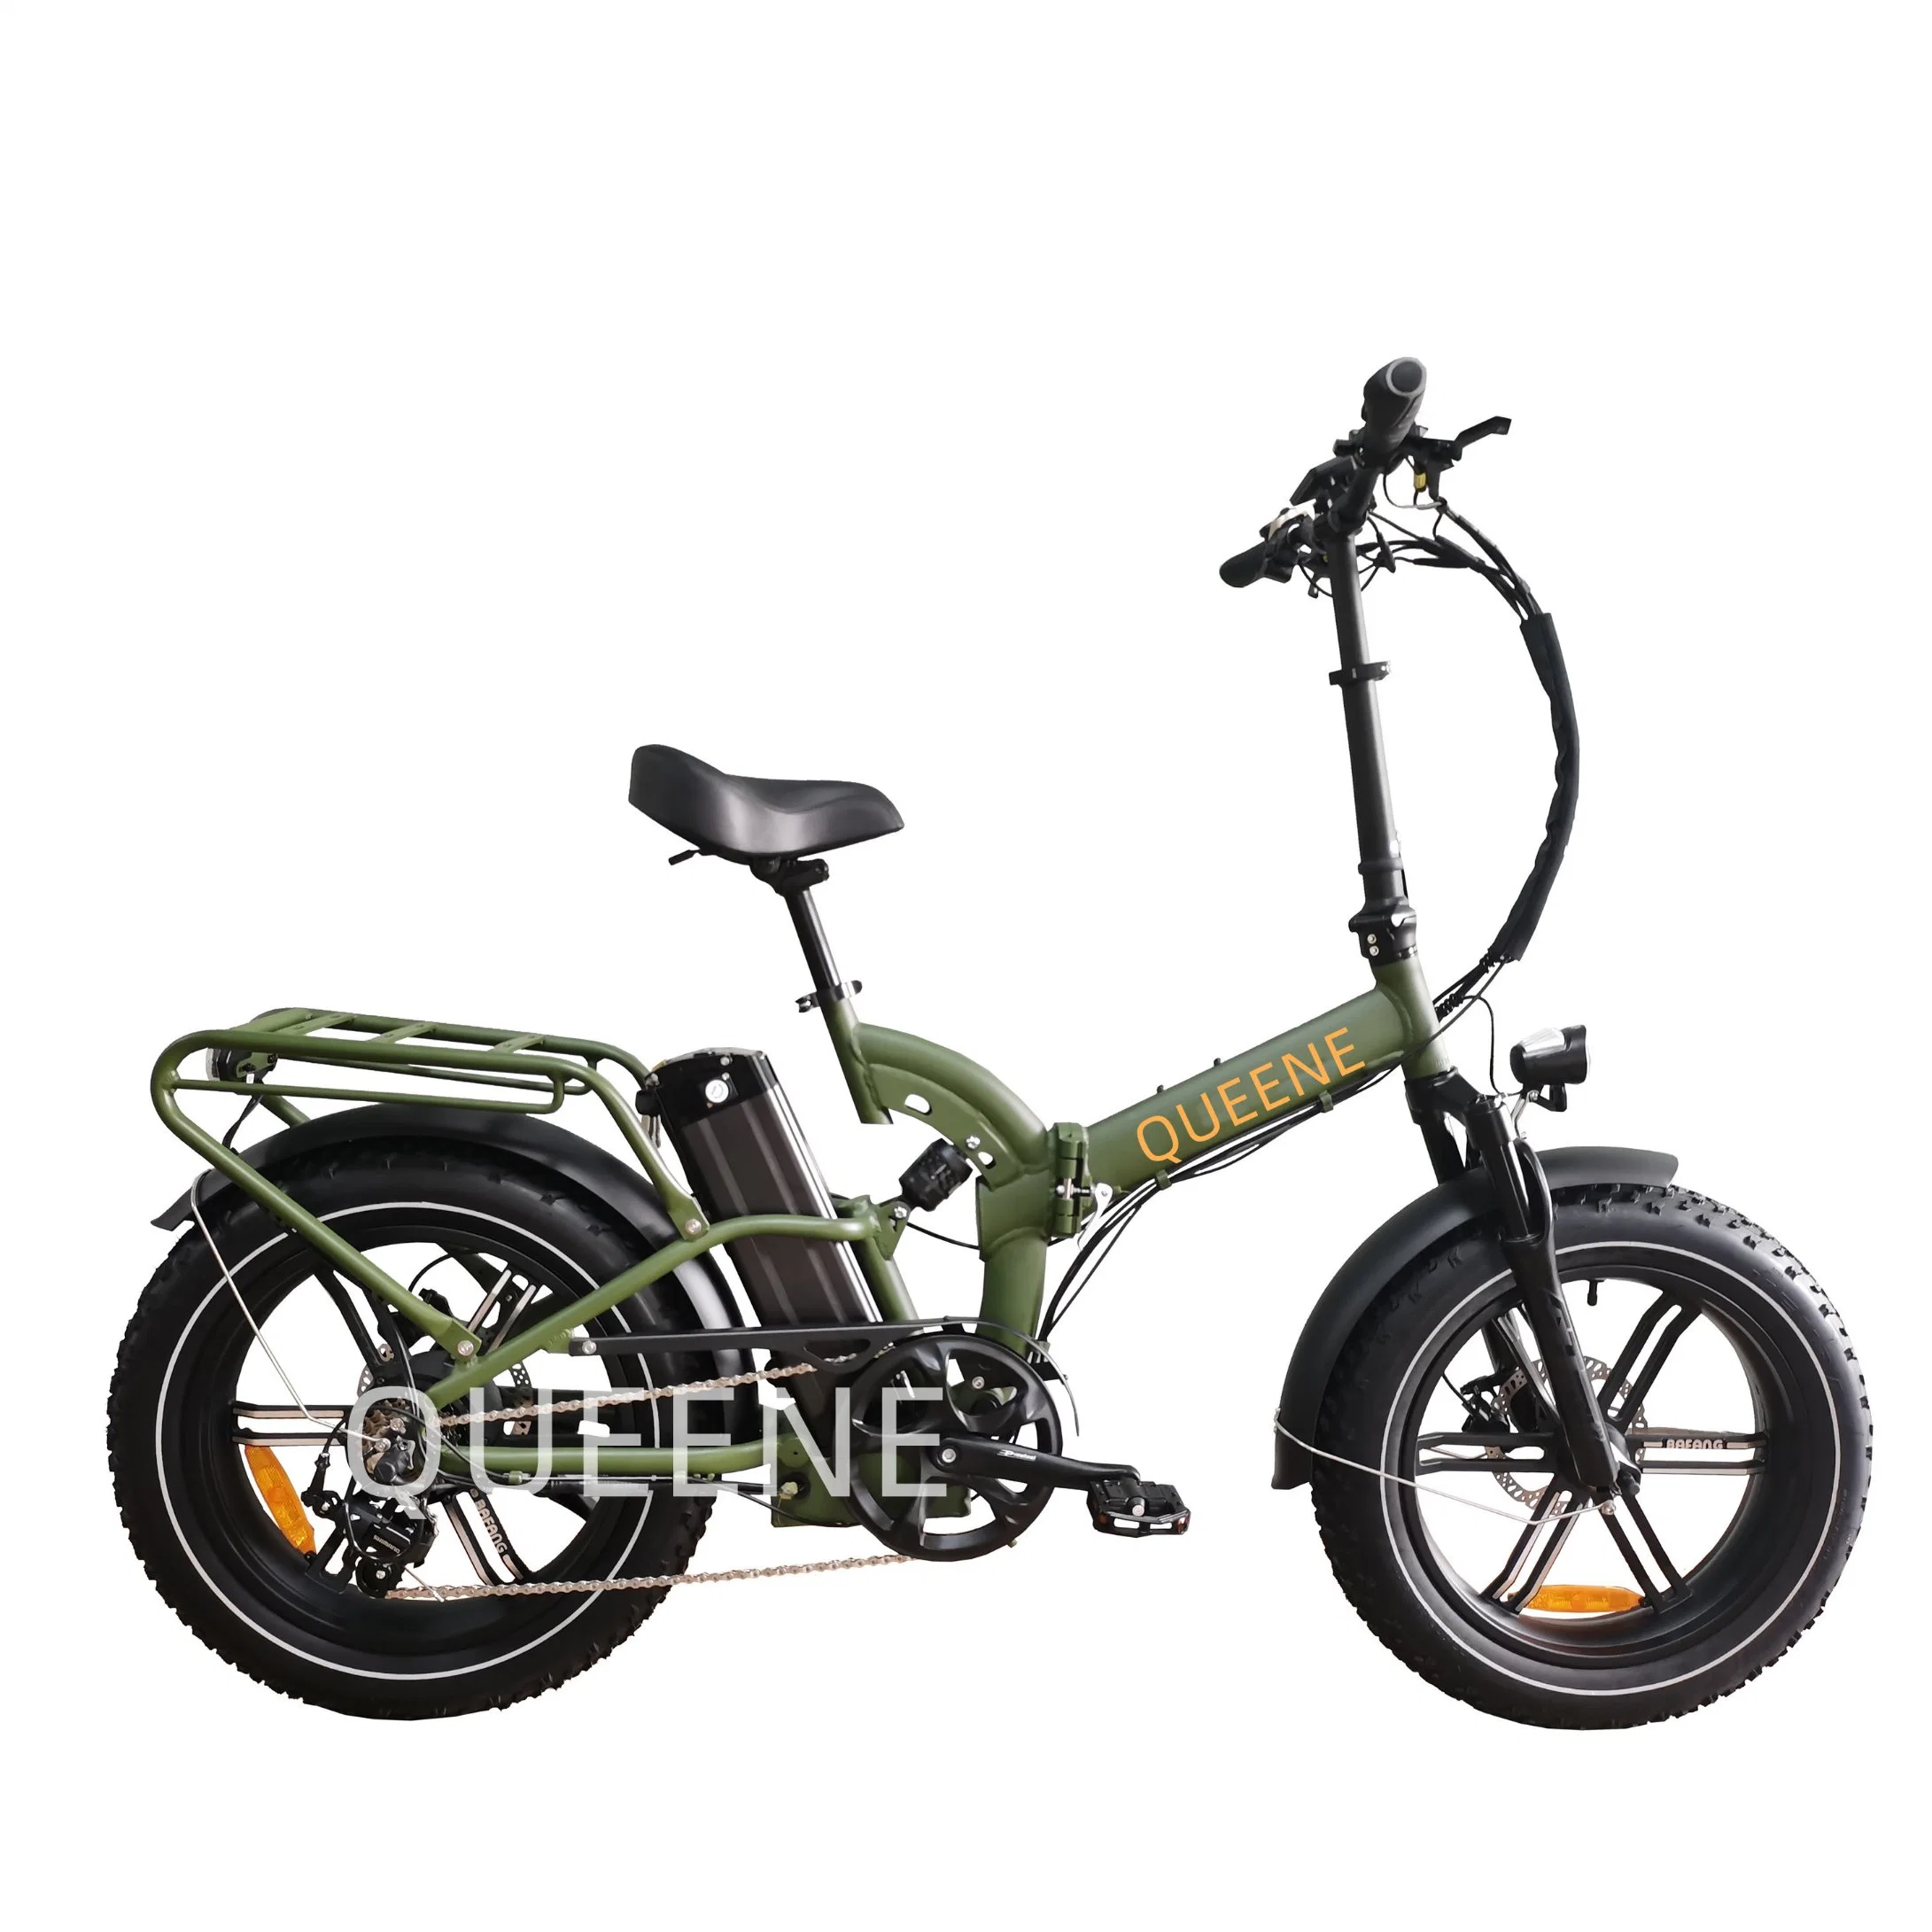 Queene/china pas cher Vintage 750W 1000W E Bike moteur Ebike la saleté de graisses de montagne vélo pneus vélo électrique